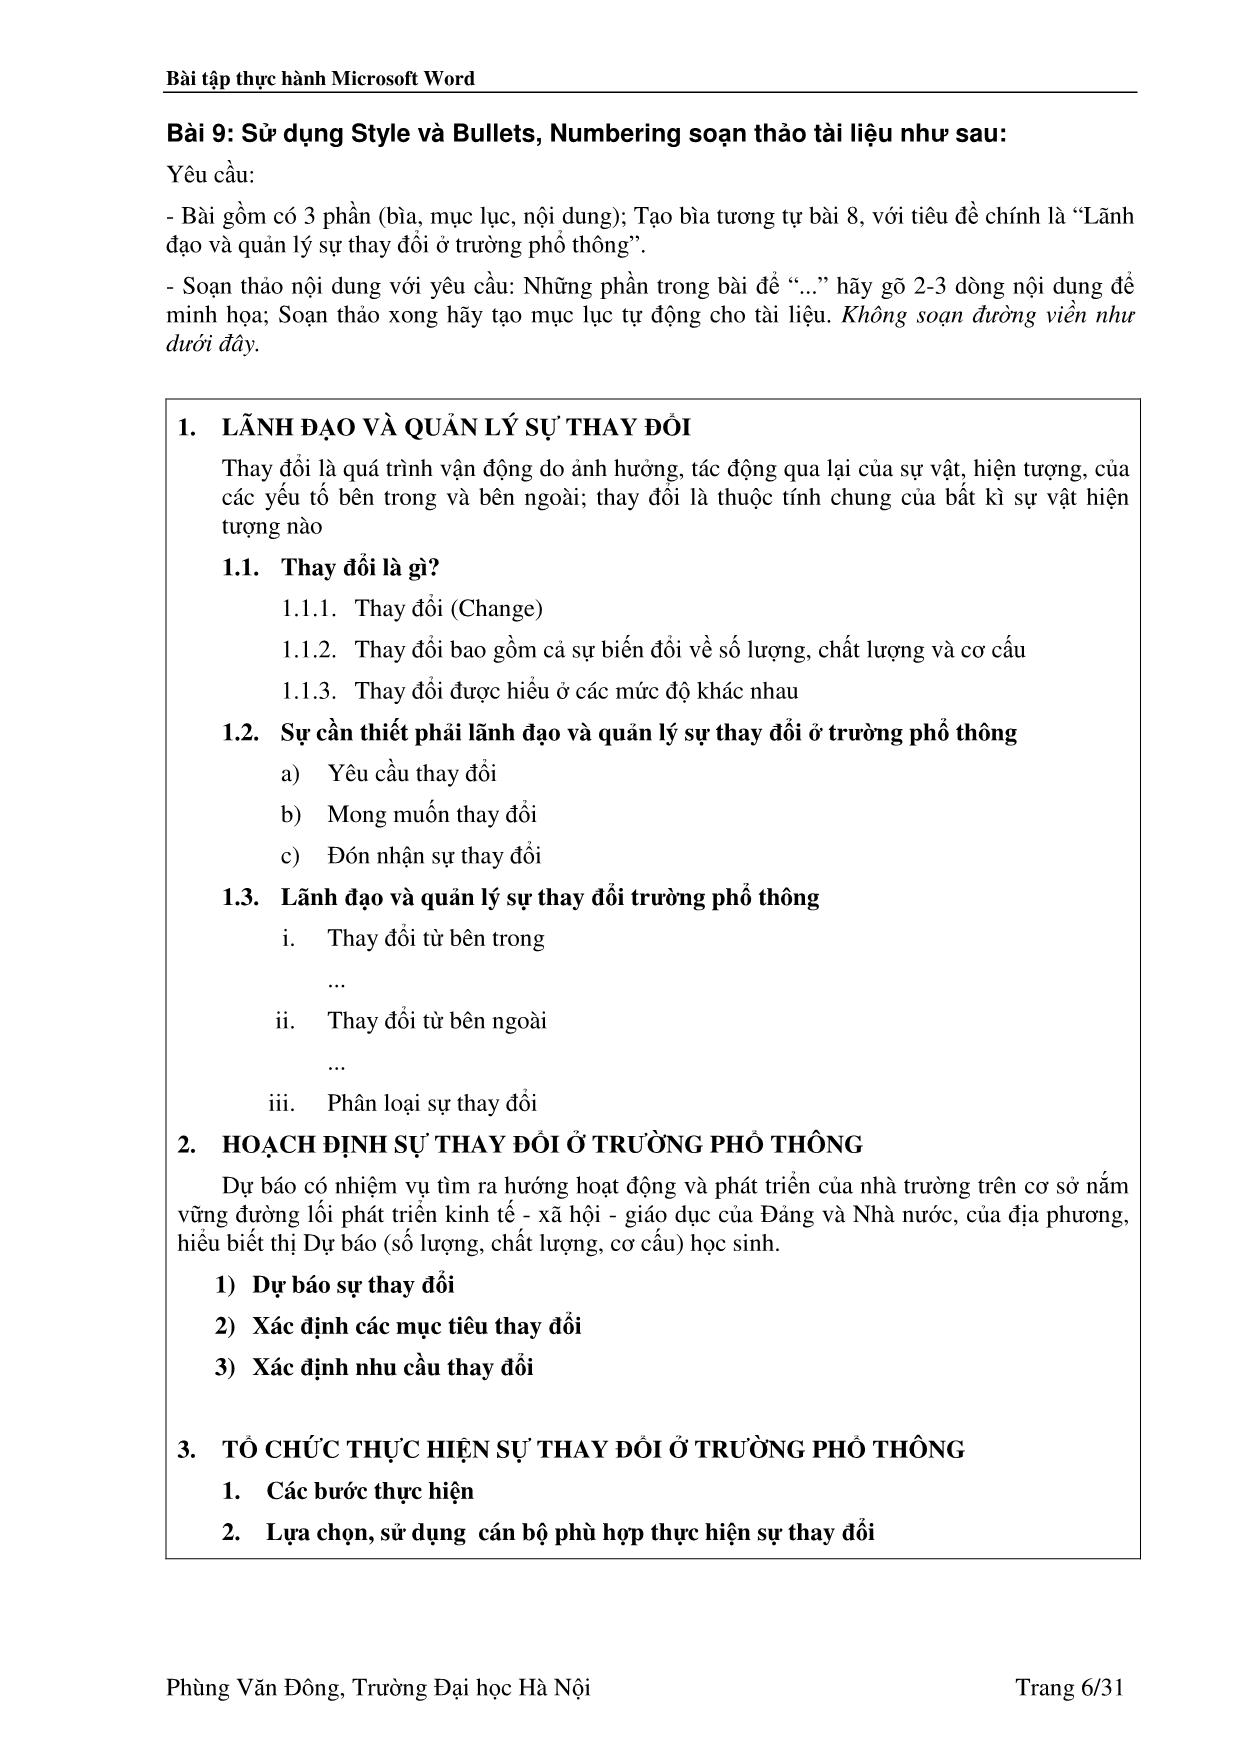 Bài tập thực hành Microsoft Word - Phùng Văn Đông trang 6